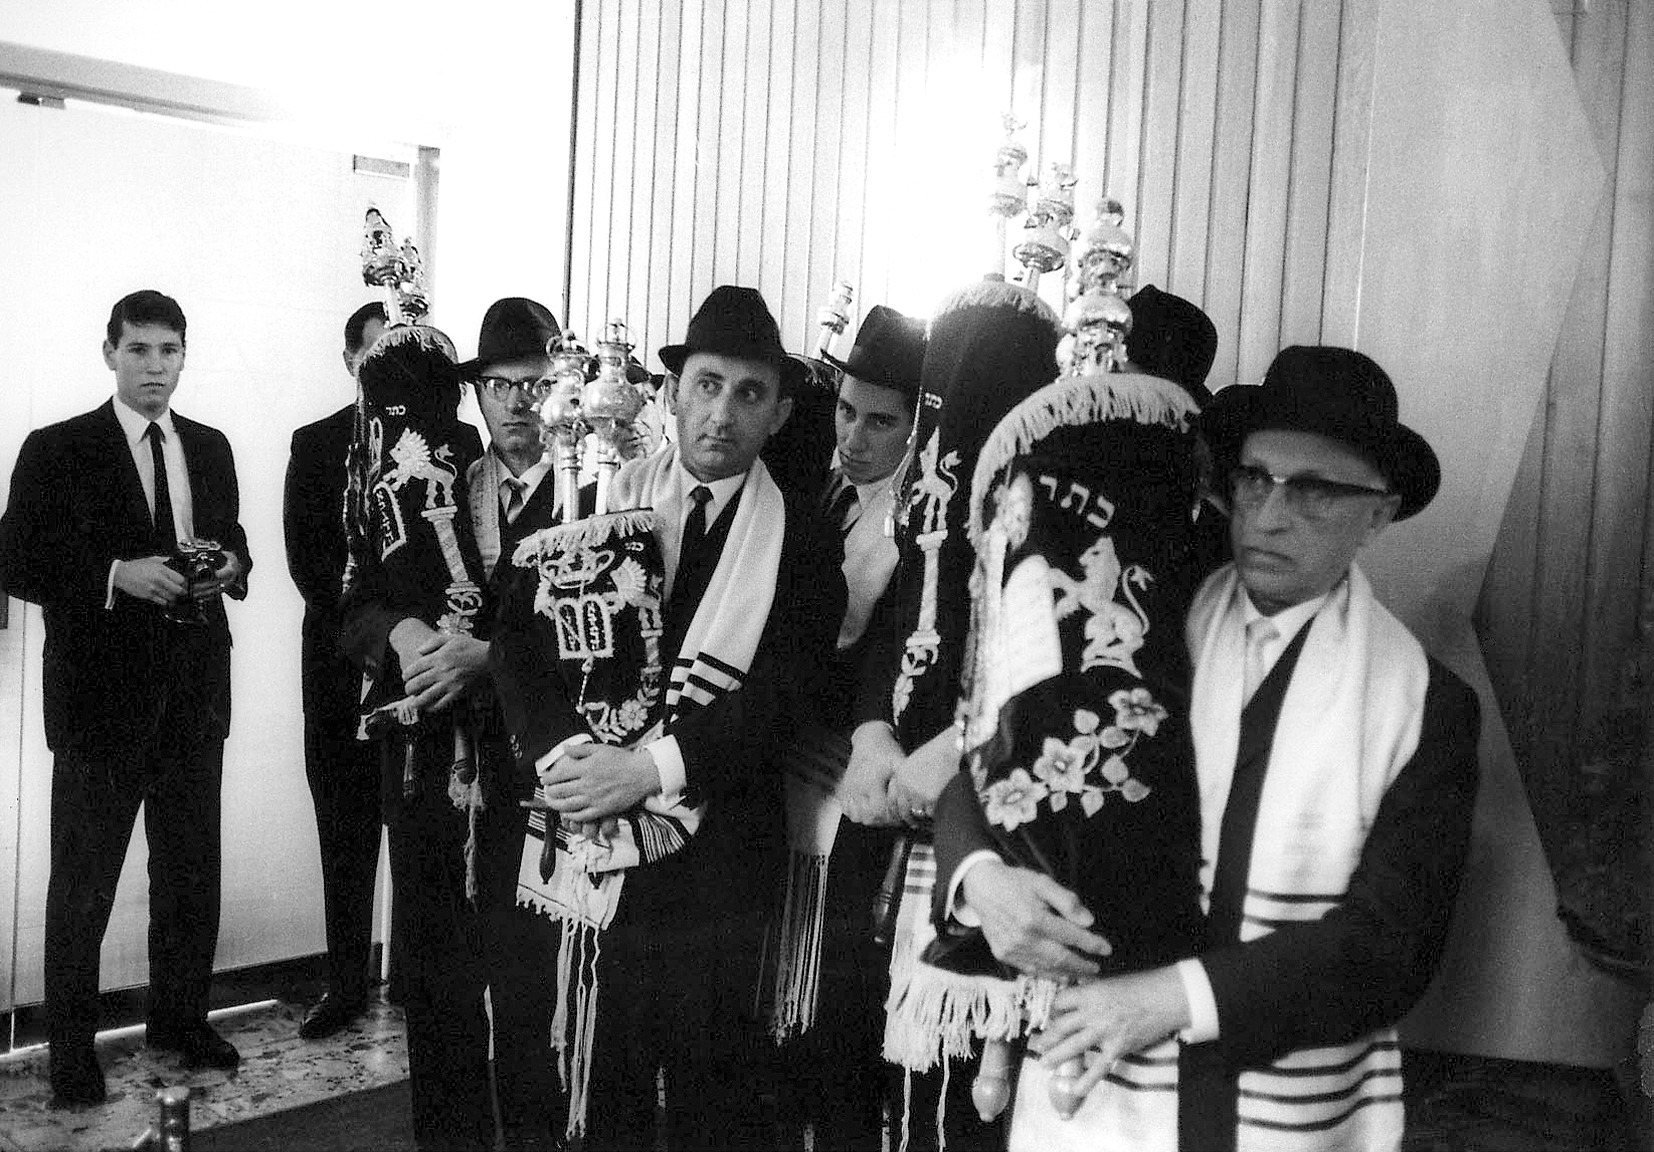 Торжественное открытие нового здания синагоги 11 сентября 1966 г. Фотограф: Адольф Диамант. Коллекция Адольфа Диаманта